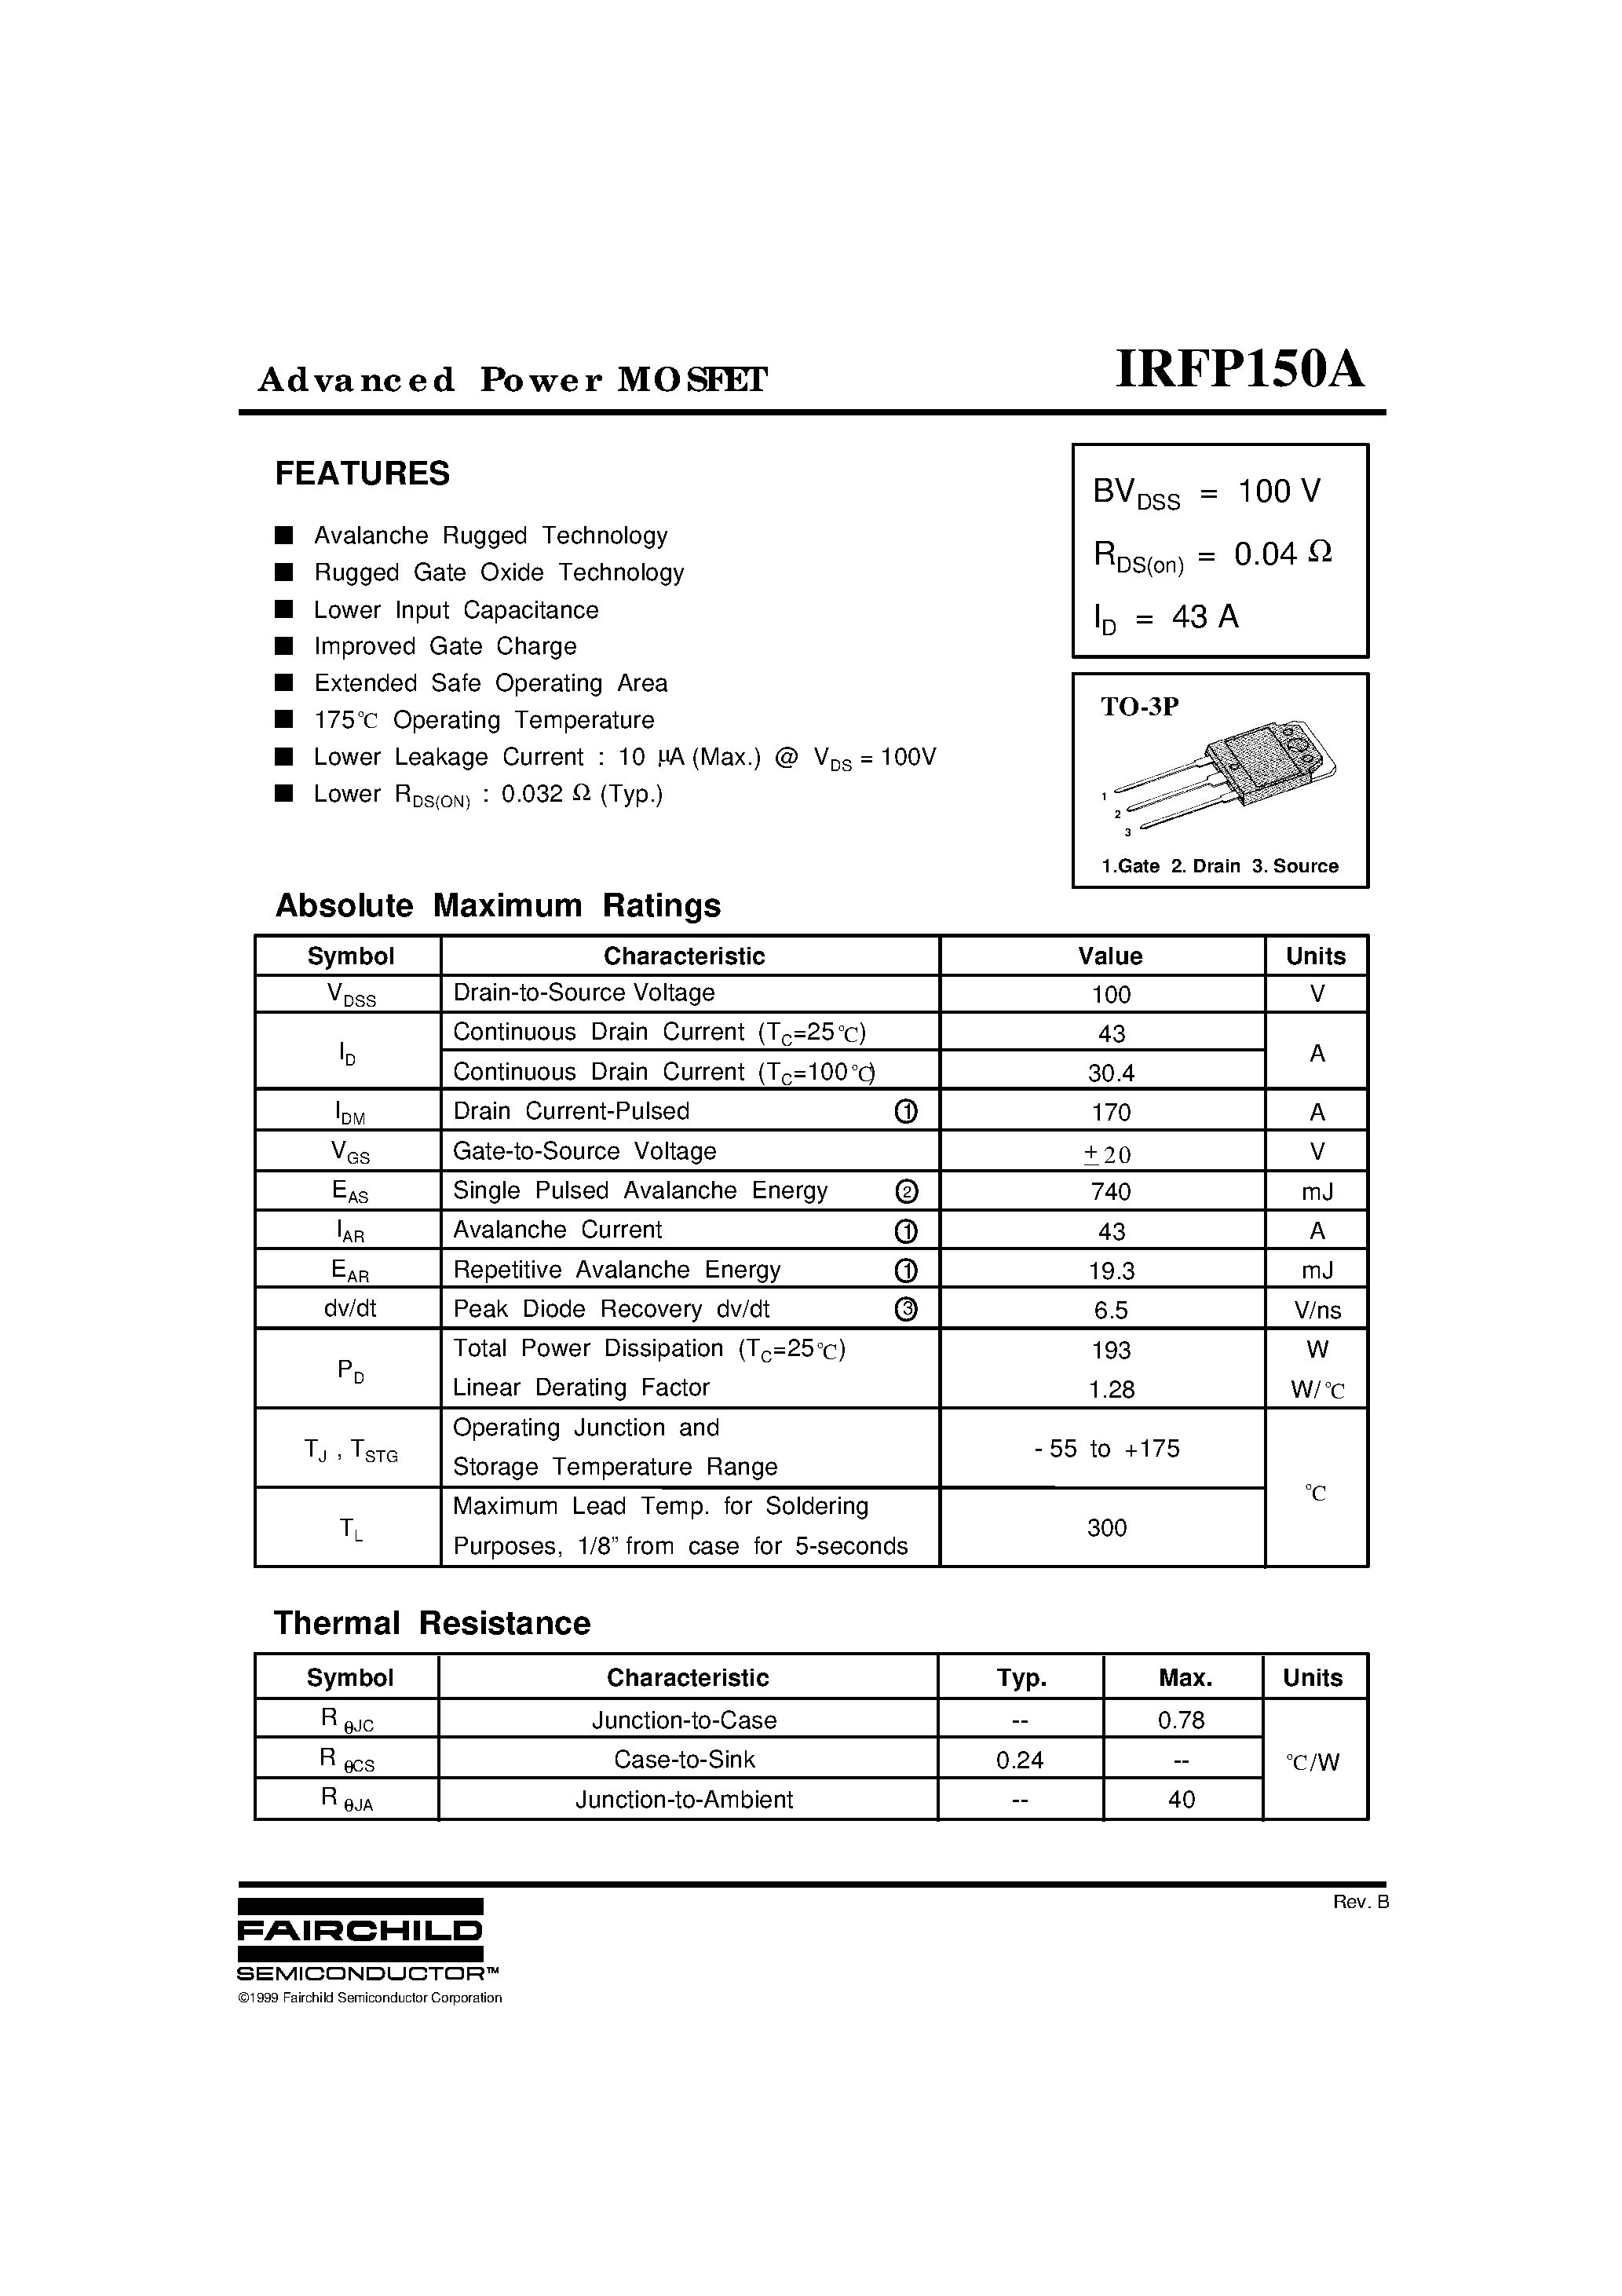 Даташит IRFP150A - Advanced Power MOSFET страница 1